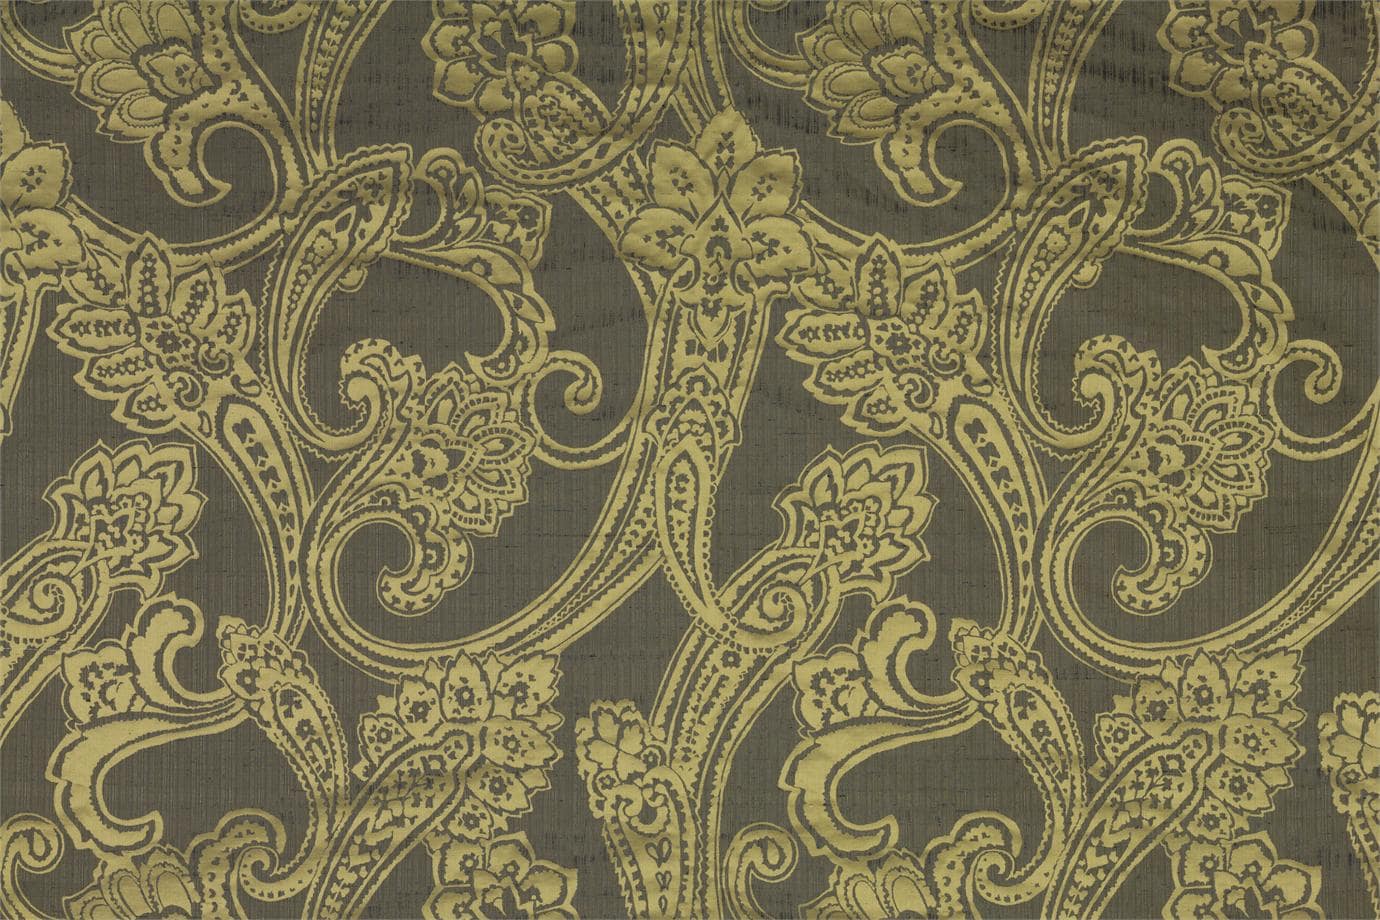 J1571 GIANDUJA 007 Cobalto home decoration fabric